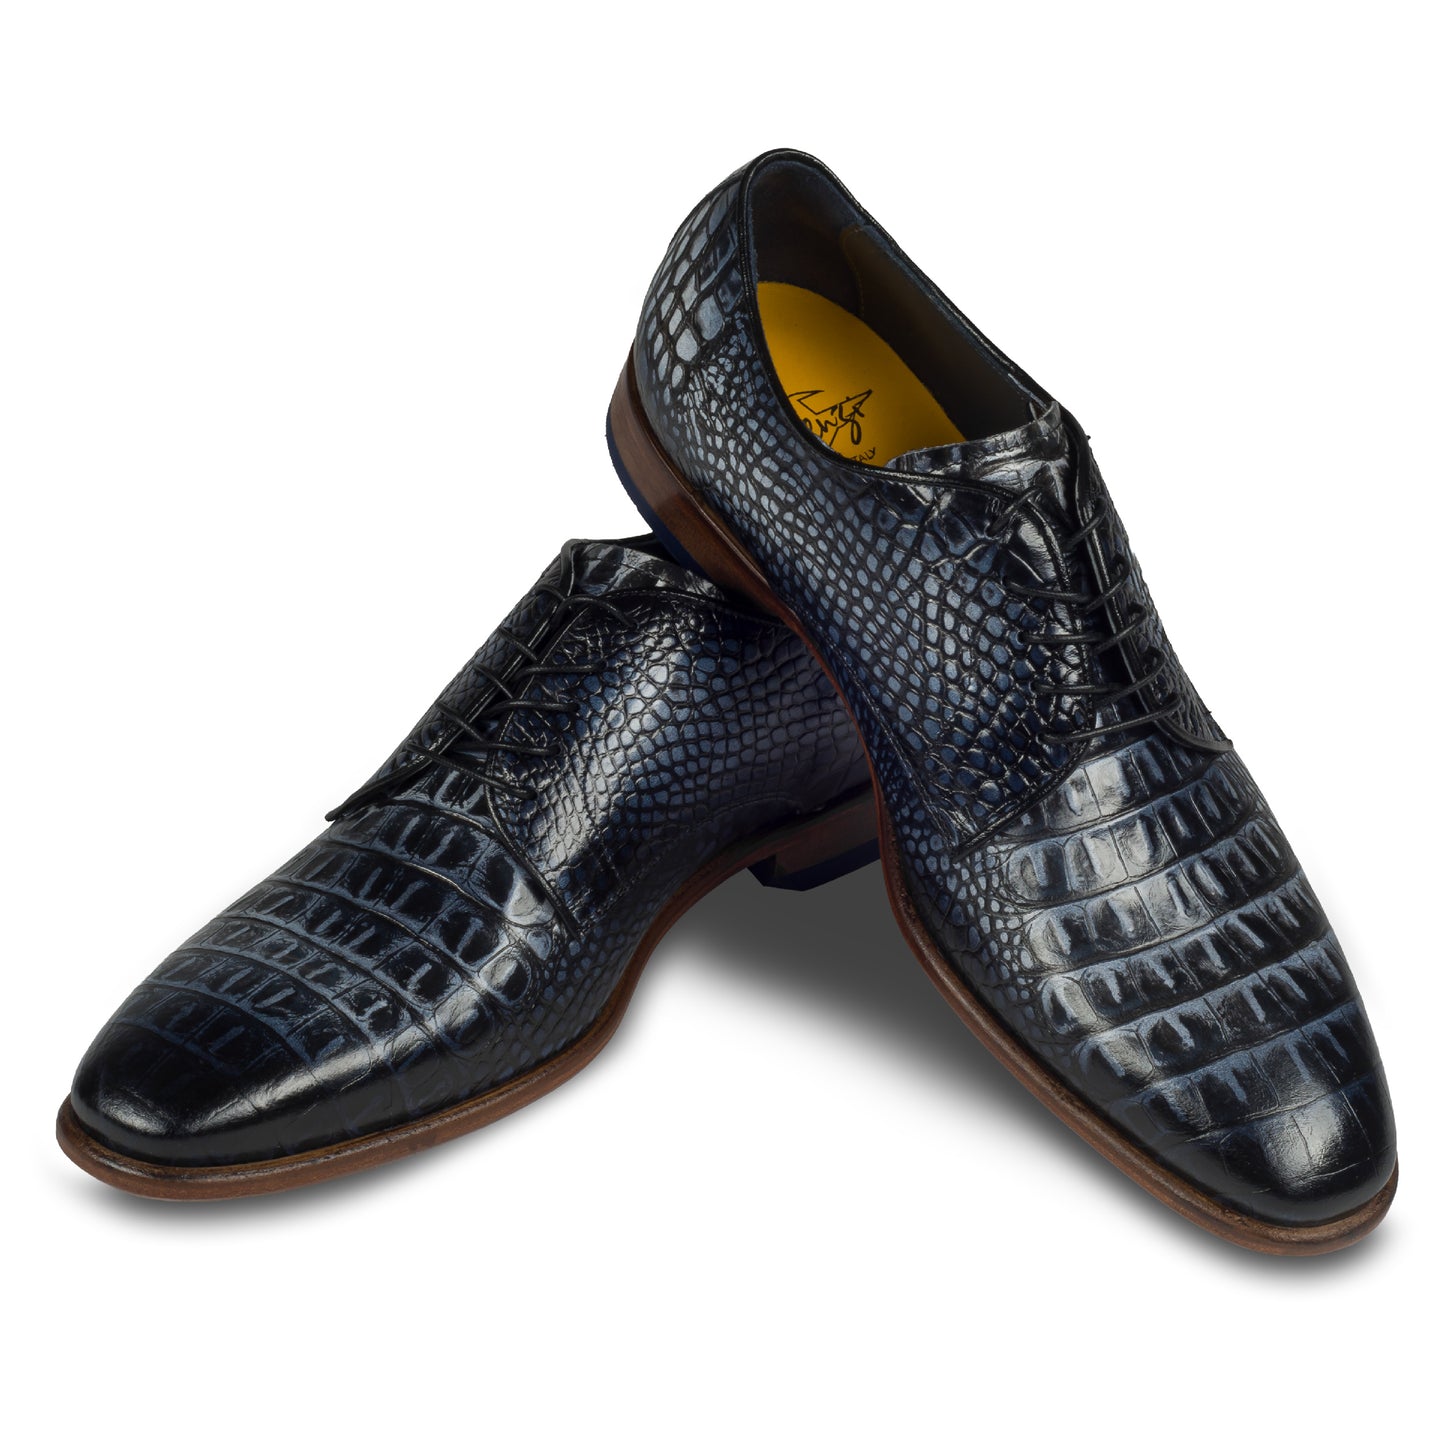 Lorenzi – Italienischer Herren Derby Schnürer aus Kalbsleder in Kroko/Reptil-Optik, schwarz/weiß. Handgefertigt und durchgenäht. Schuhe paarweise überkreuzt aufgestellt. 